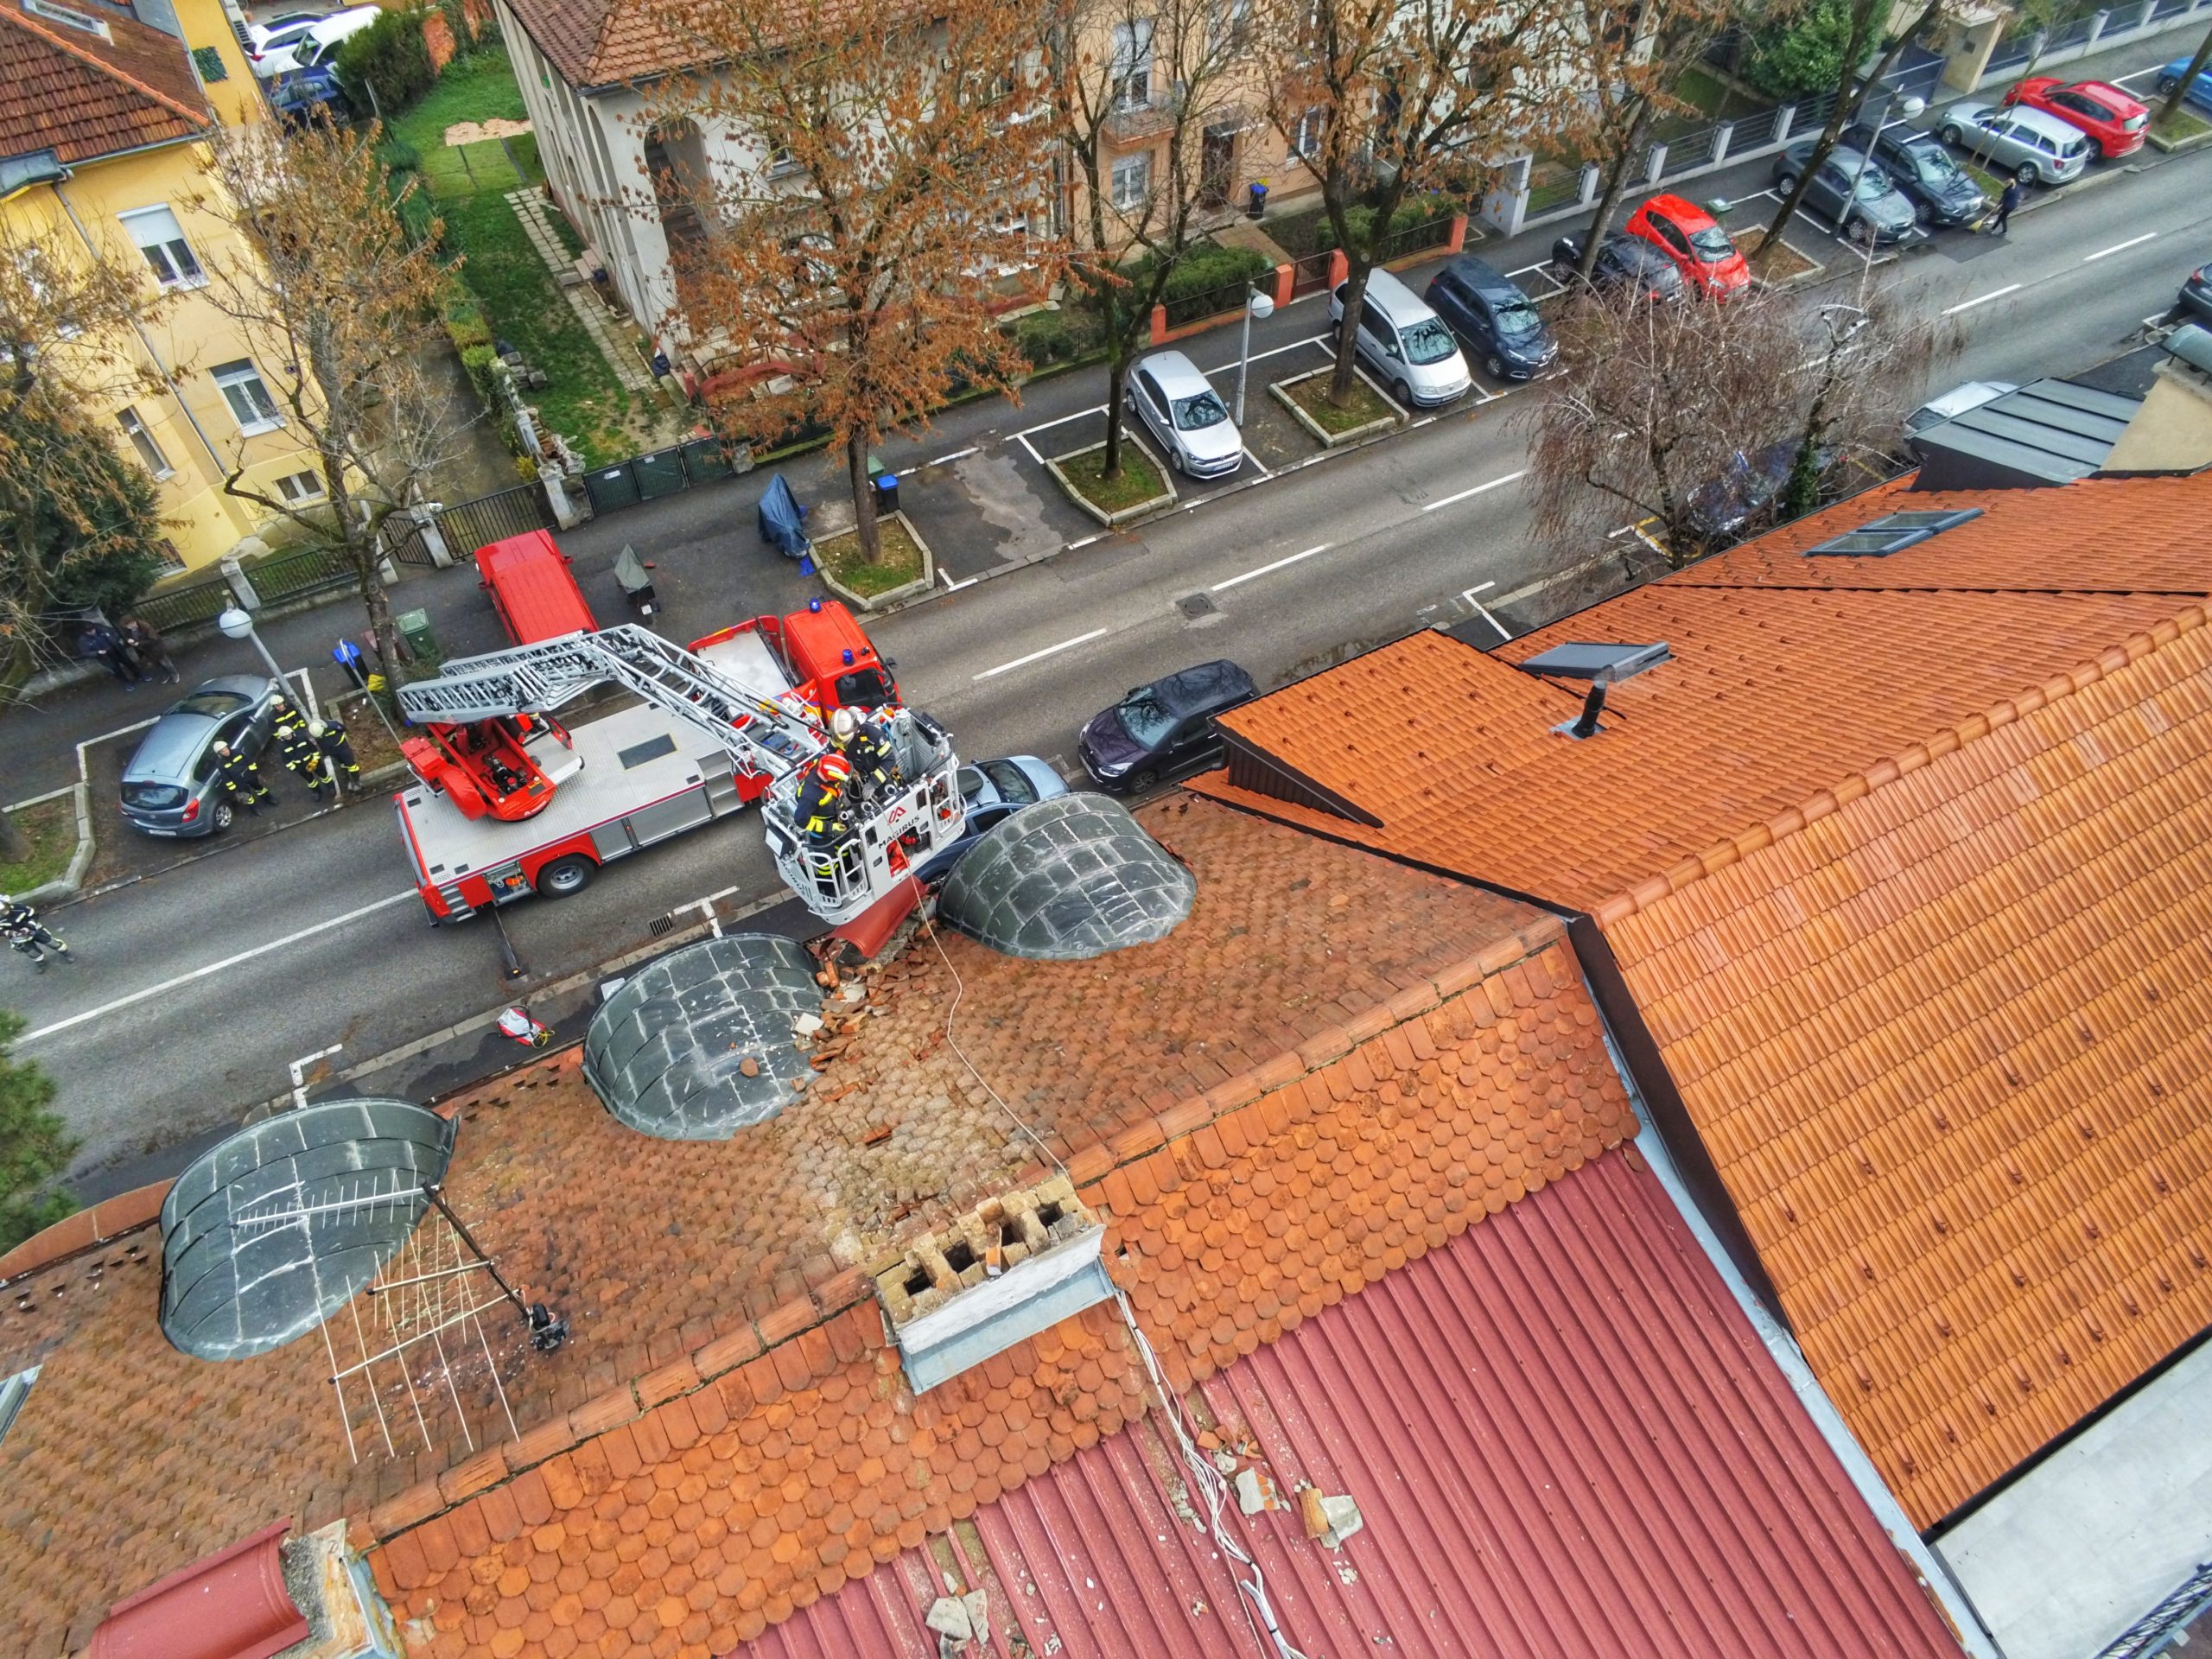 Većina intervencija u Zagrebu odvijala se na krovovima.